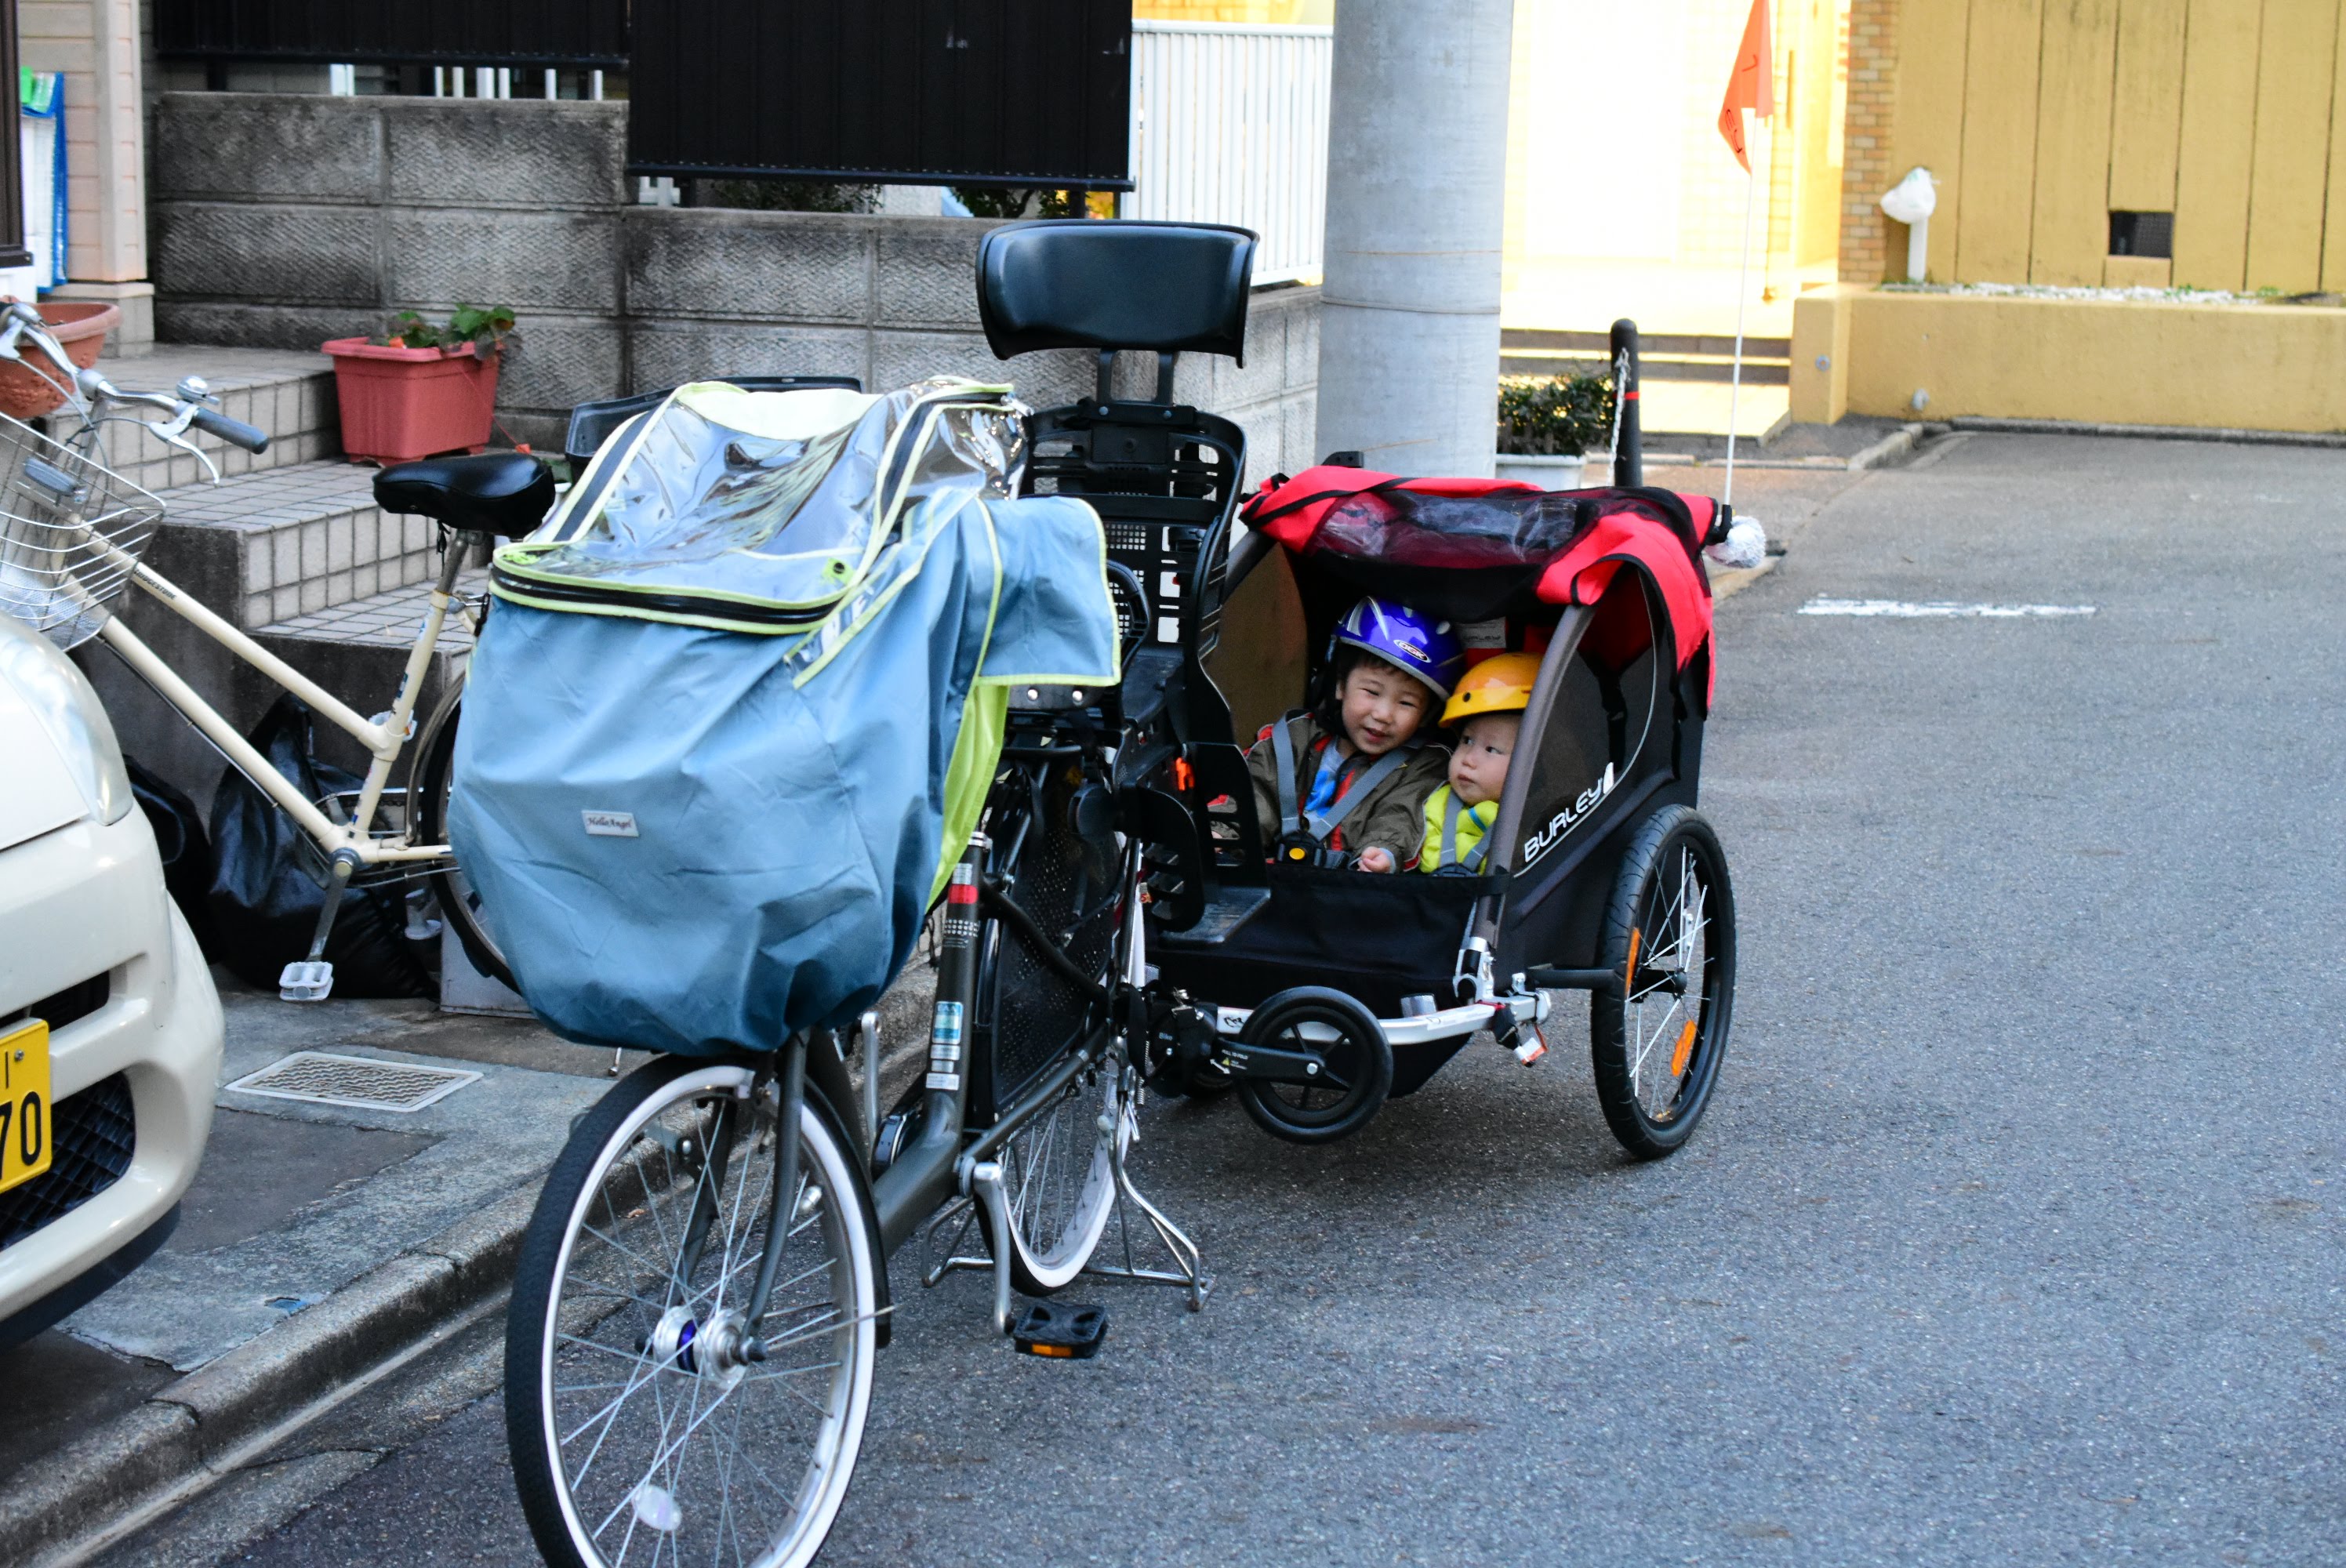 N様 BURLEY試乗記 一宮市のたて輪は子供乗せ自転車よりも安全なチャイルドトレーラーをお勧めします。